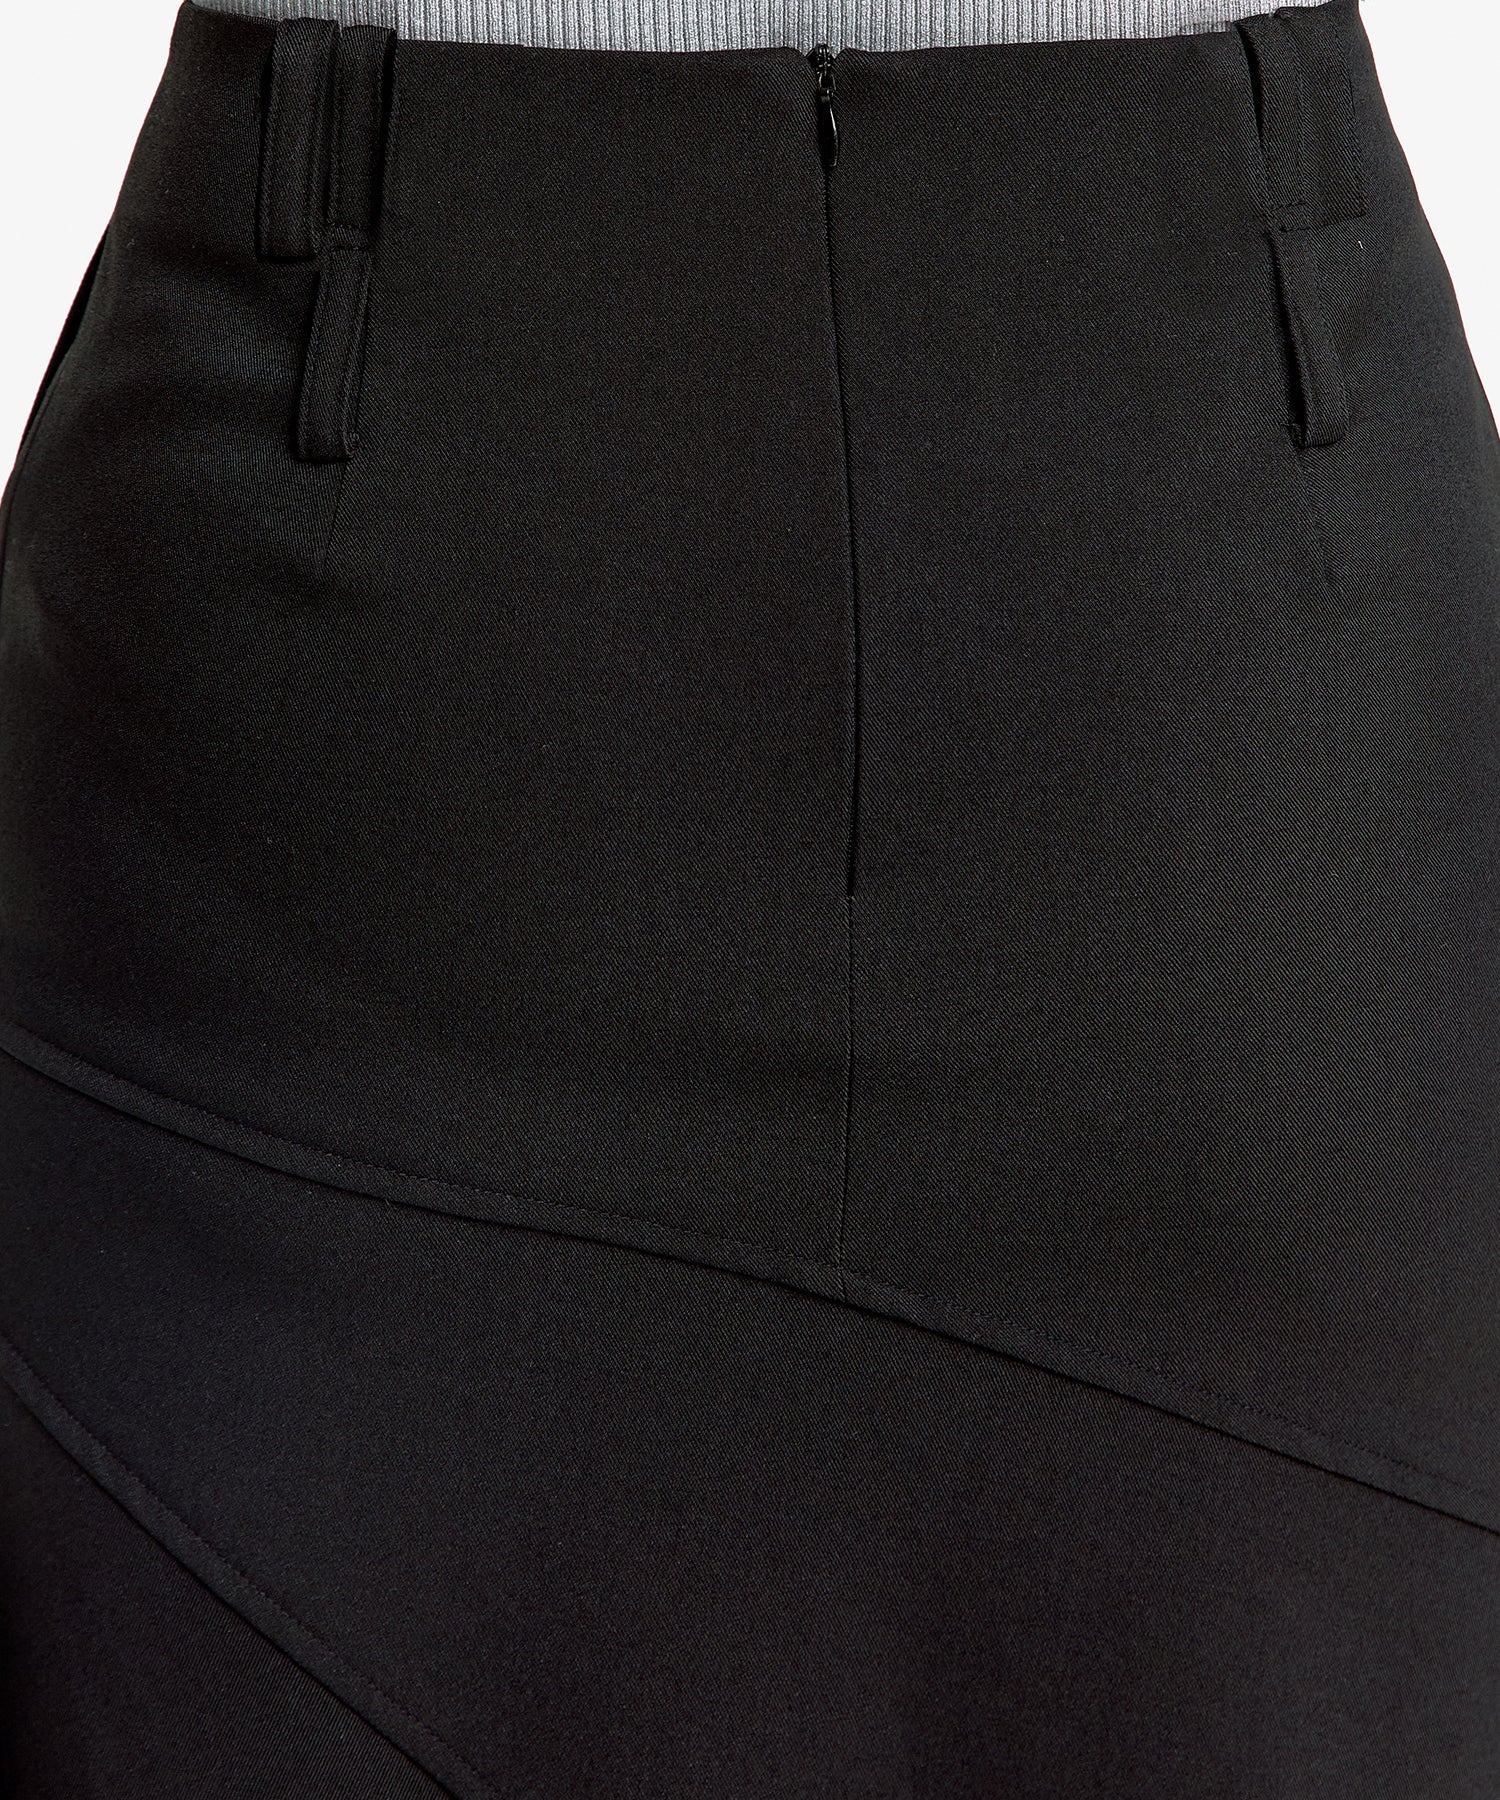 Paneled Gored Skirt